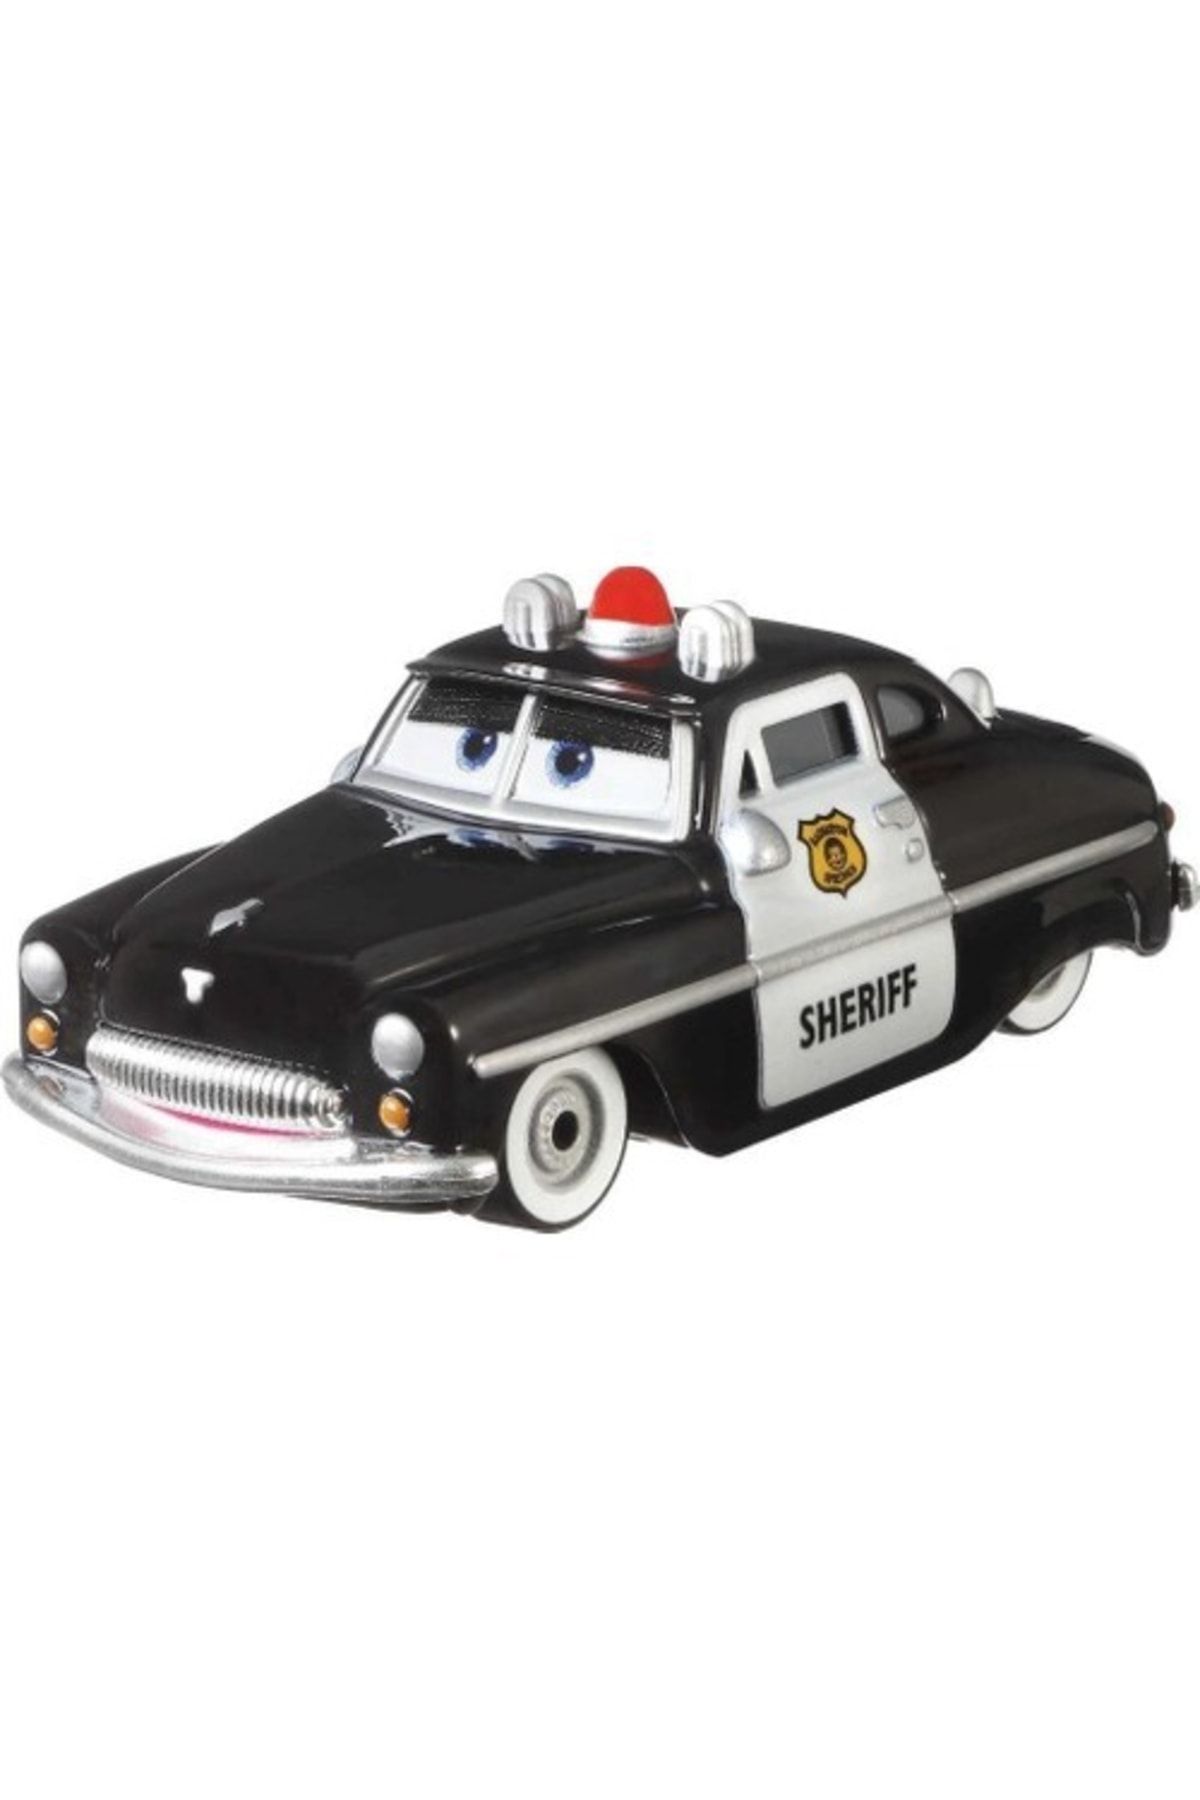 Mattel Disney Pixar Cars Metal Araba - Sheriff Dxv29 Hbk68 Lisanslı Ürün